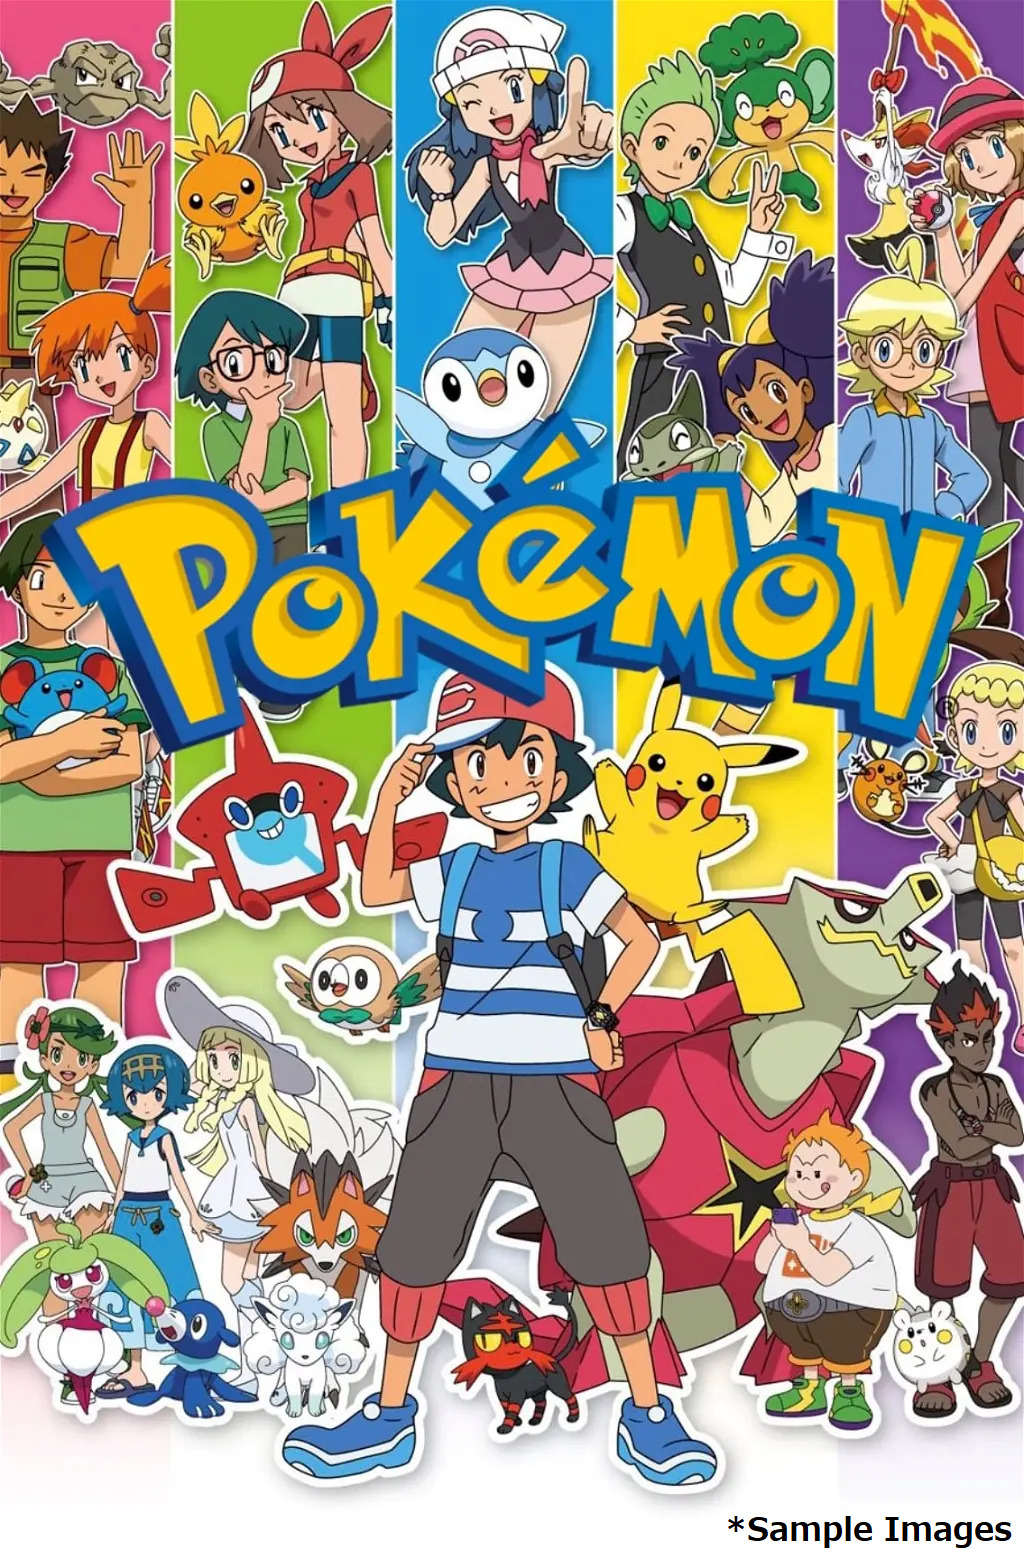 Pokemon TV Anime Theme Song BEST OF BEST OF BEST 1997 2022 LTD DVD